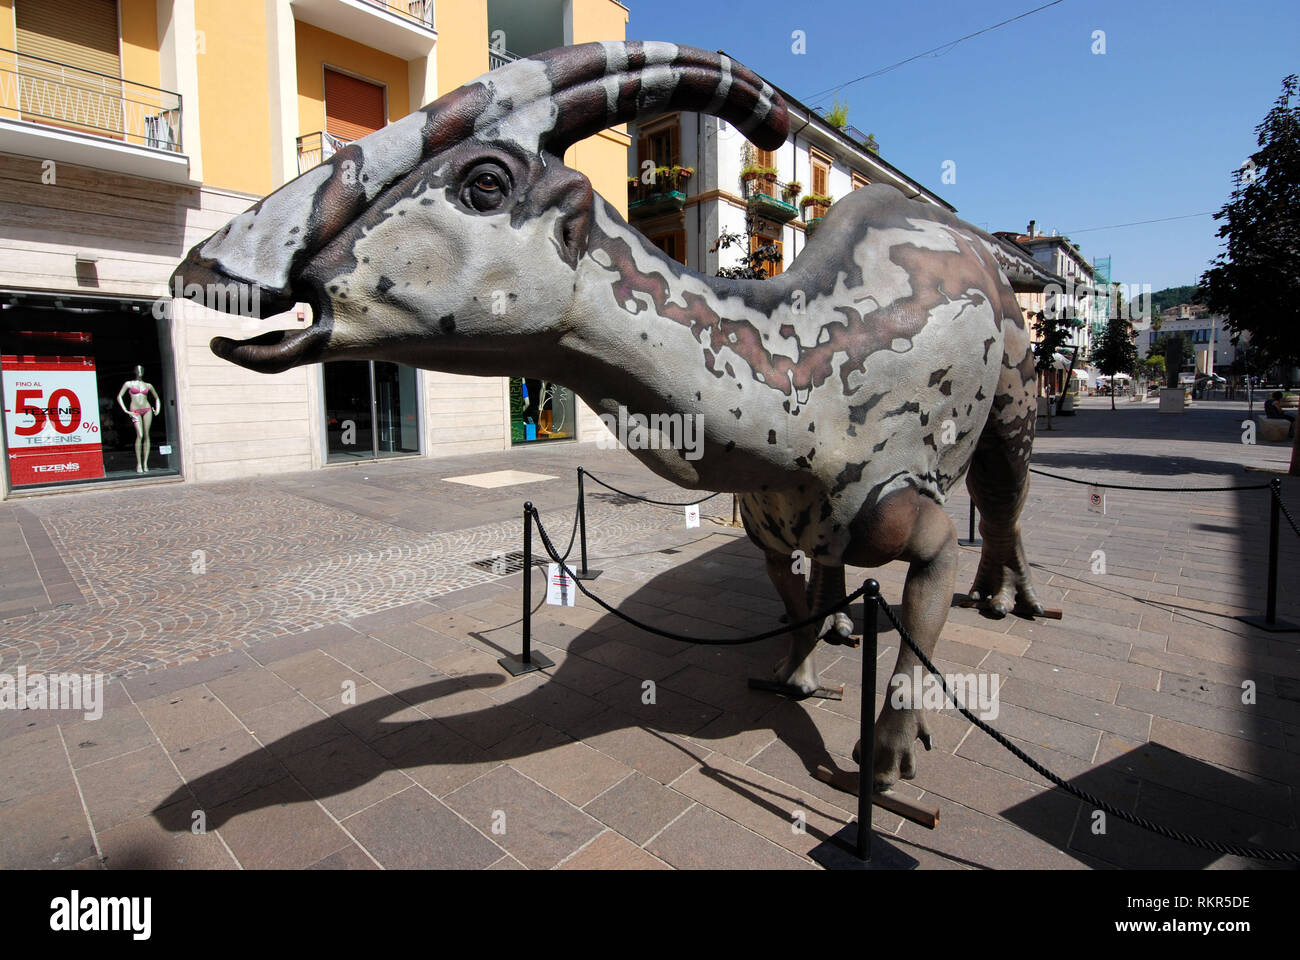 Les dinosaures marcher autour de la ville de reproduction à l'échelle 1:1 dinosaure parasaurolophus walkeri exposés dans la ville de Cosenza Calabria Italie 2018 Banque D'Images